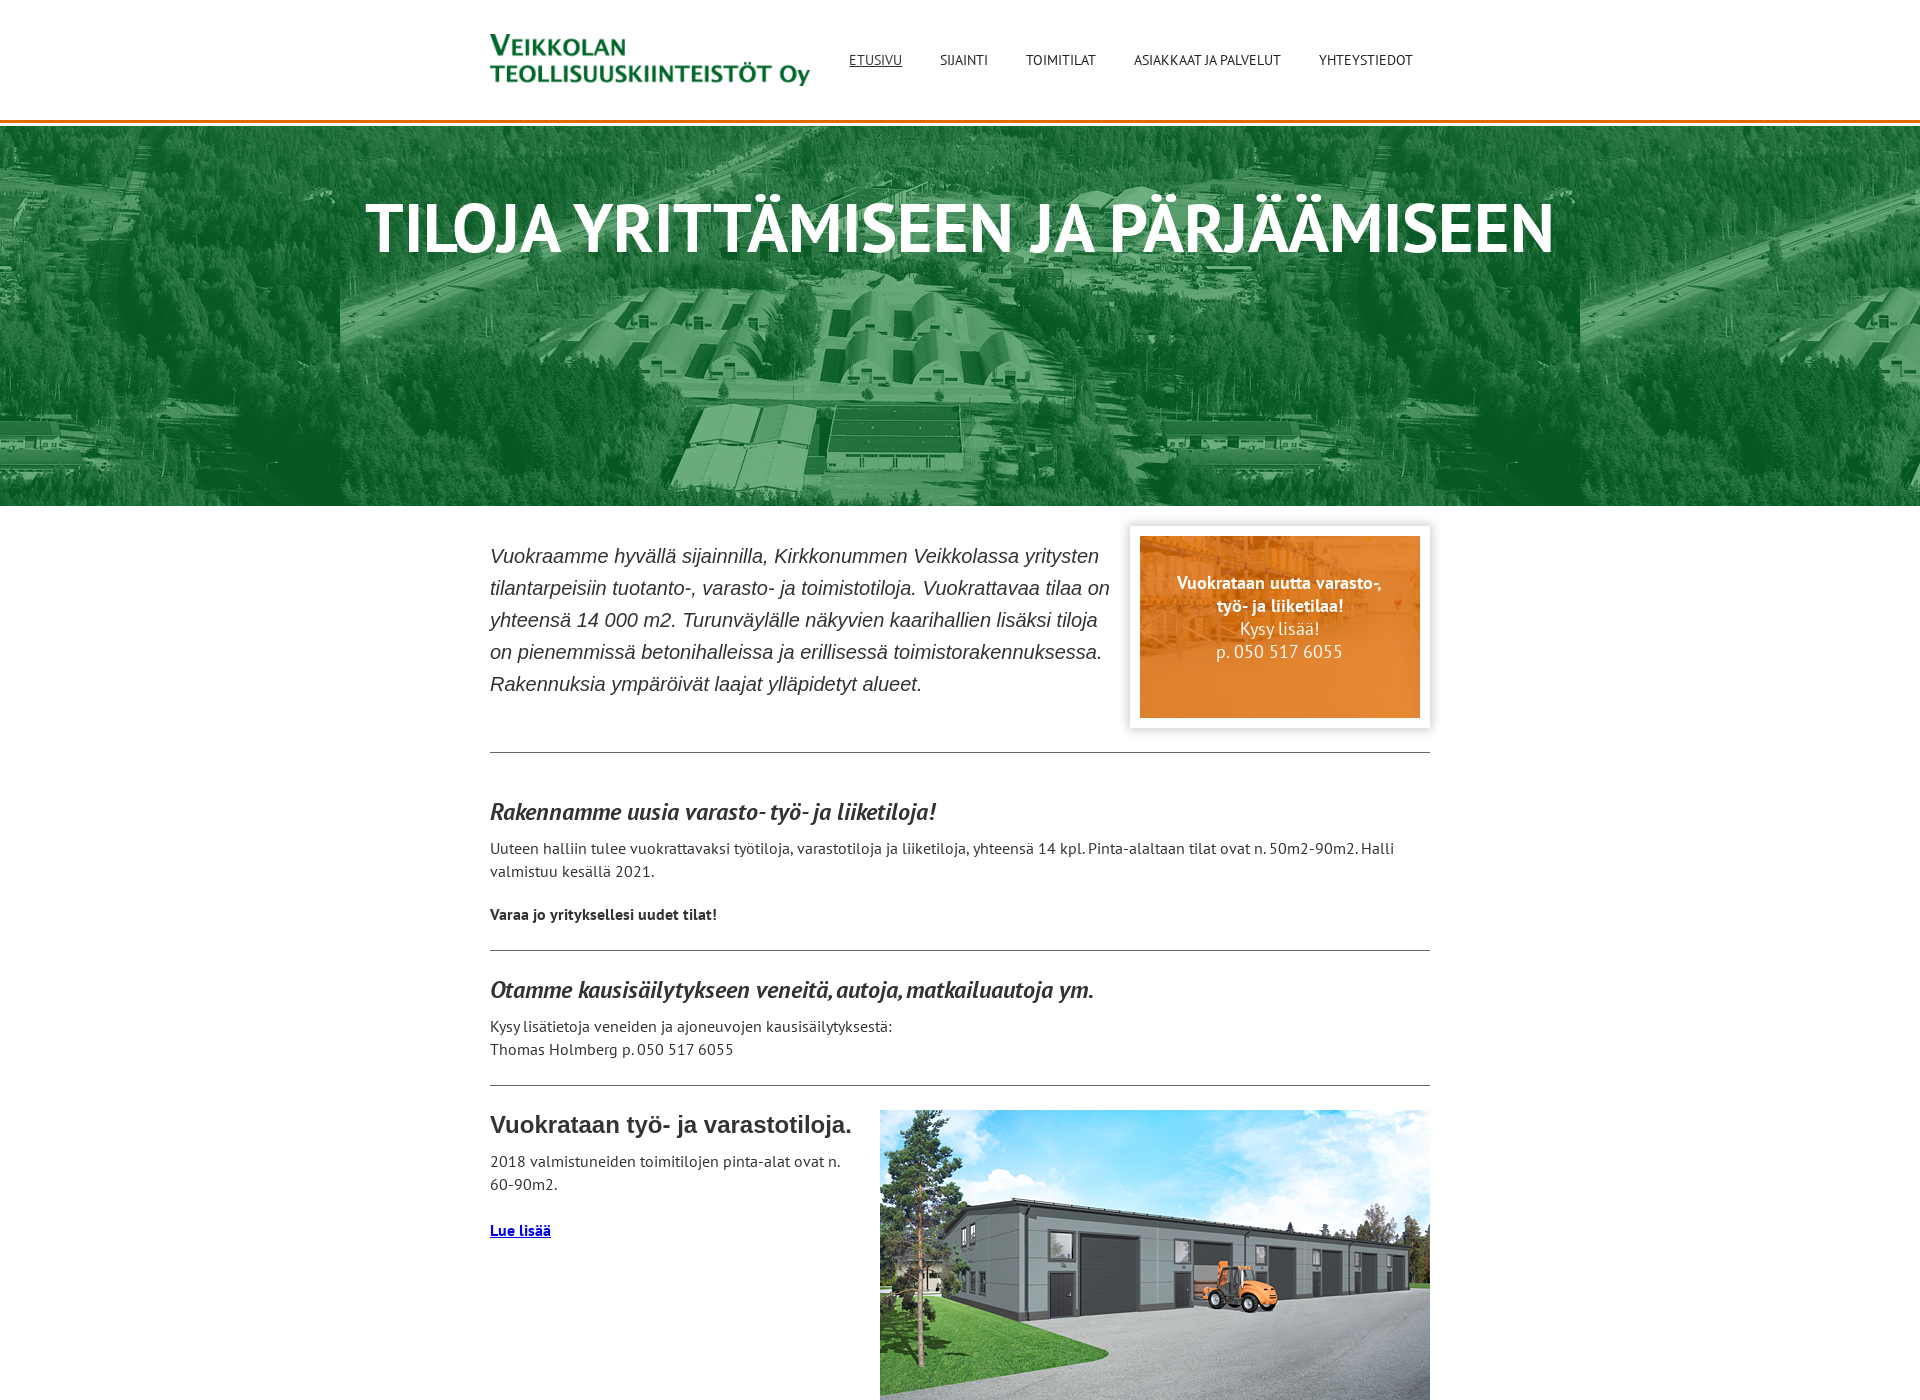 Skärmdump för veikkolanteollisuuskiinteisto.fi